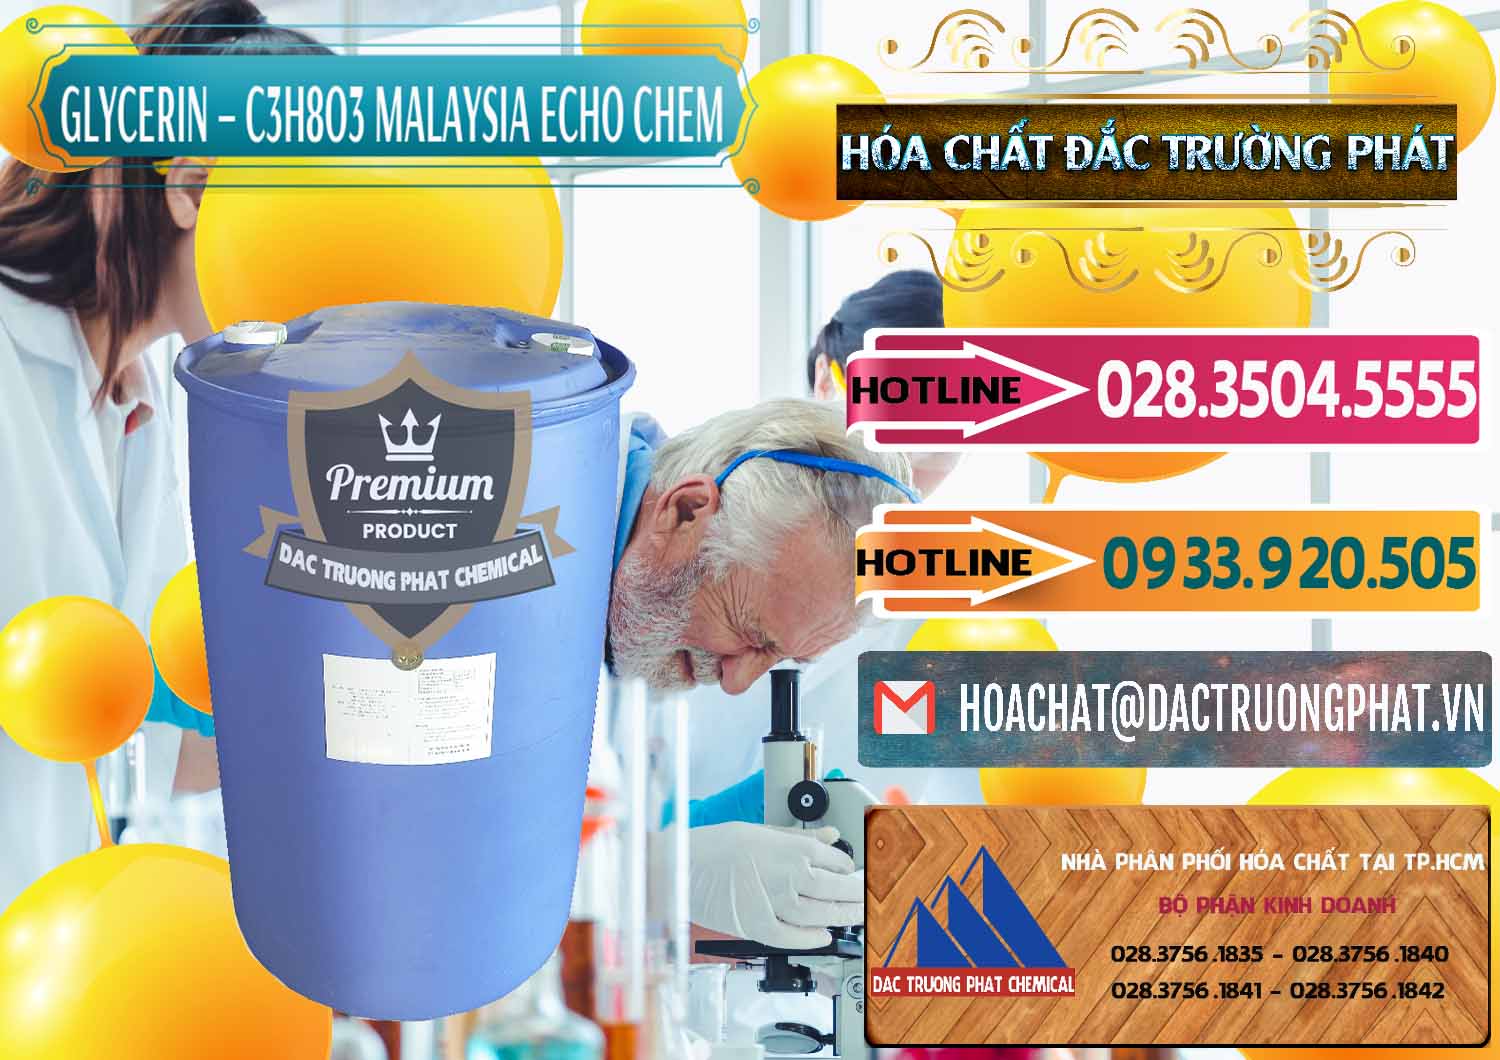 Nơi cung ứng _ bán C3H8O3 - Glycerin 99.7% Echo Chem Malaysia - 0273 - Công ty cung cấp ( nhập khẩu ) hóa chất tại TP.HCM - dactruongphat.vn